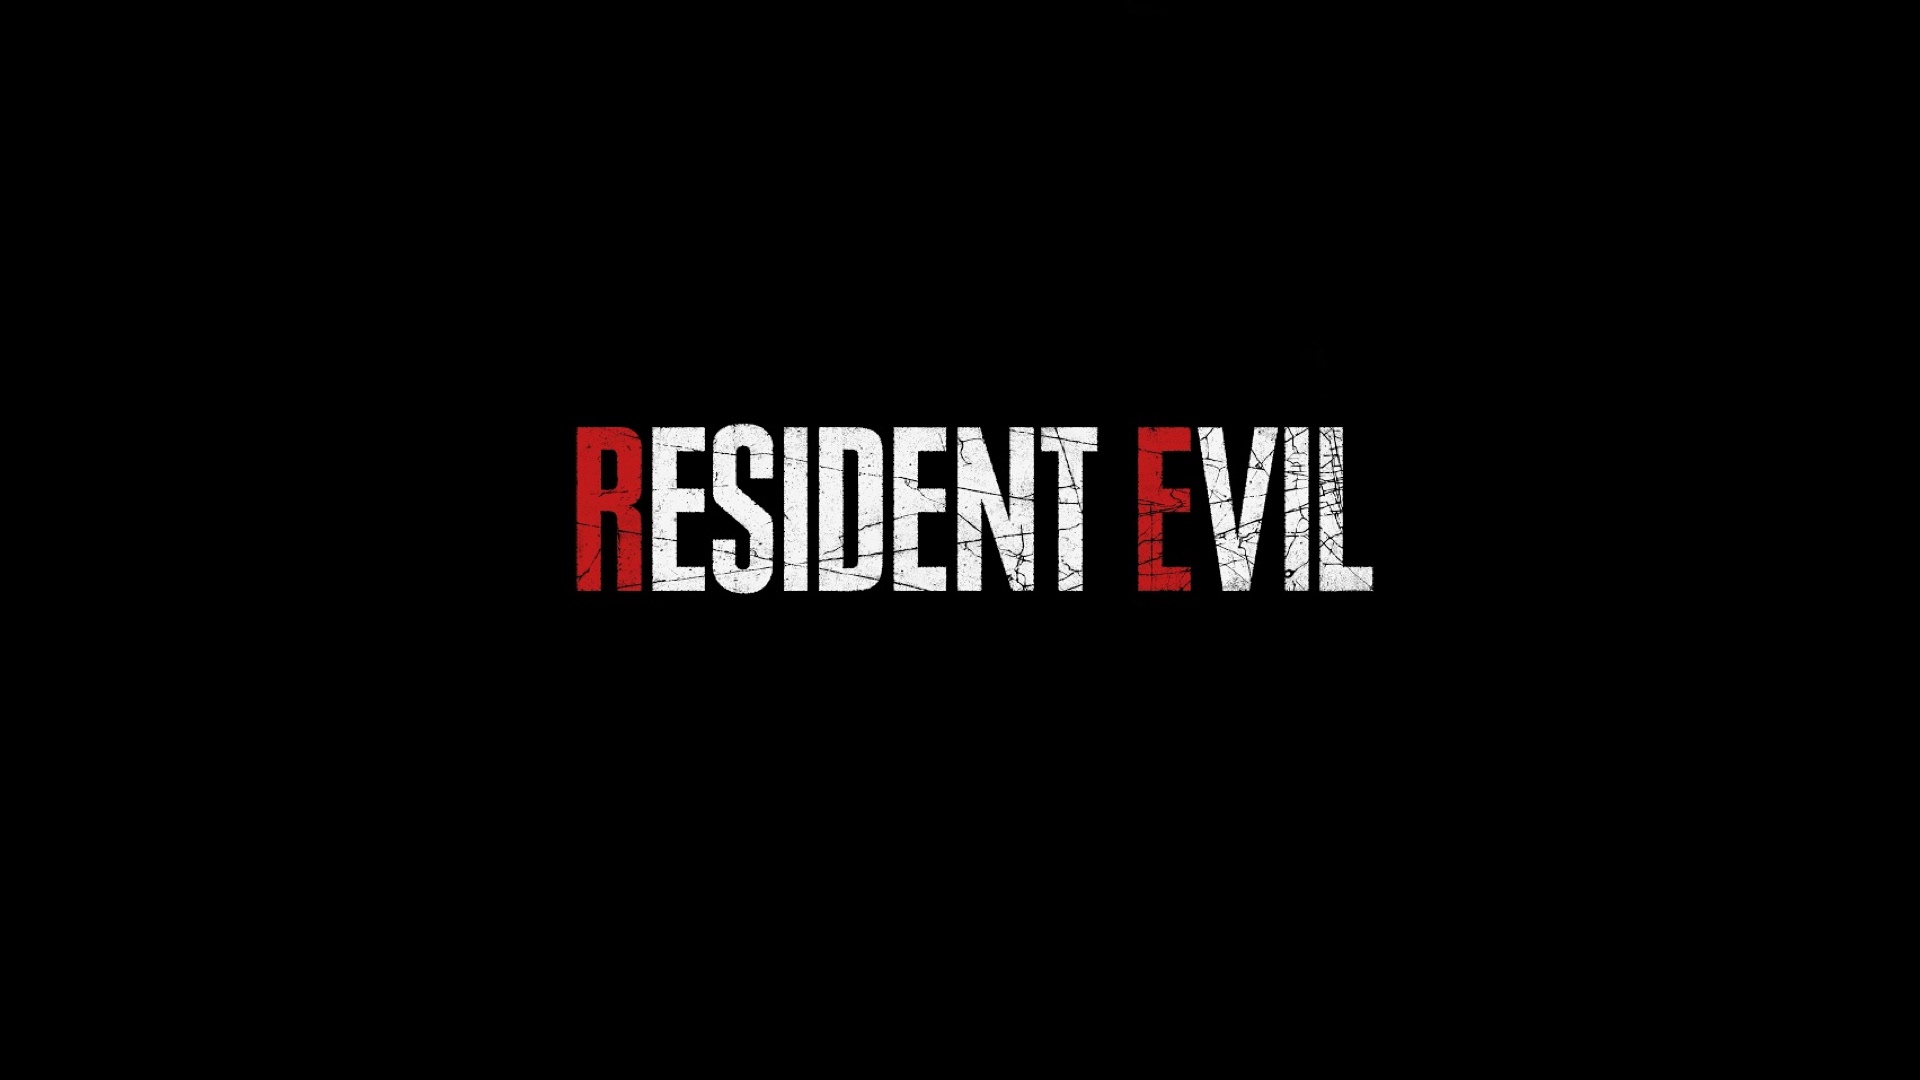 سریال Resident Evil Netflix رسما معرفی شد و به نظر می رسد… جالب است